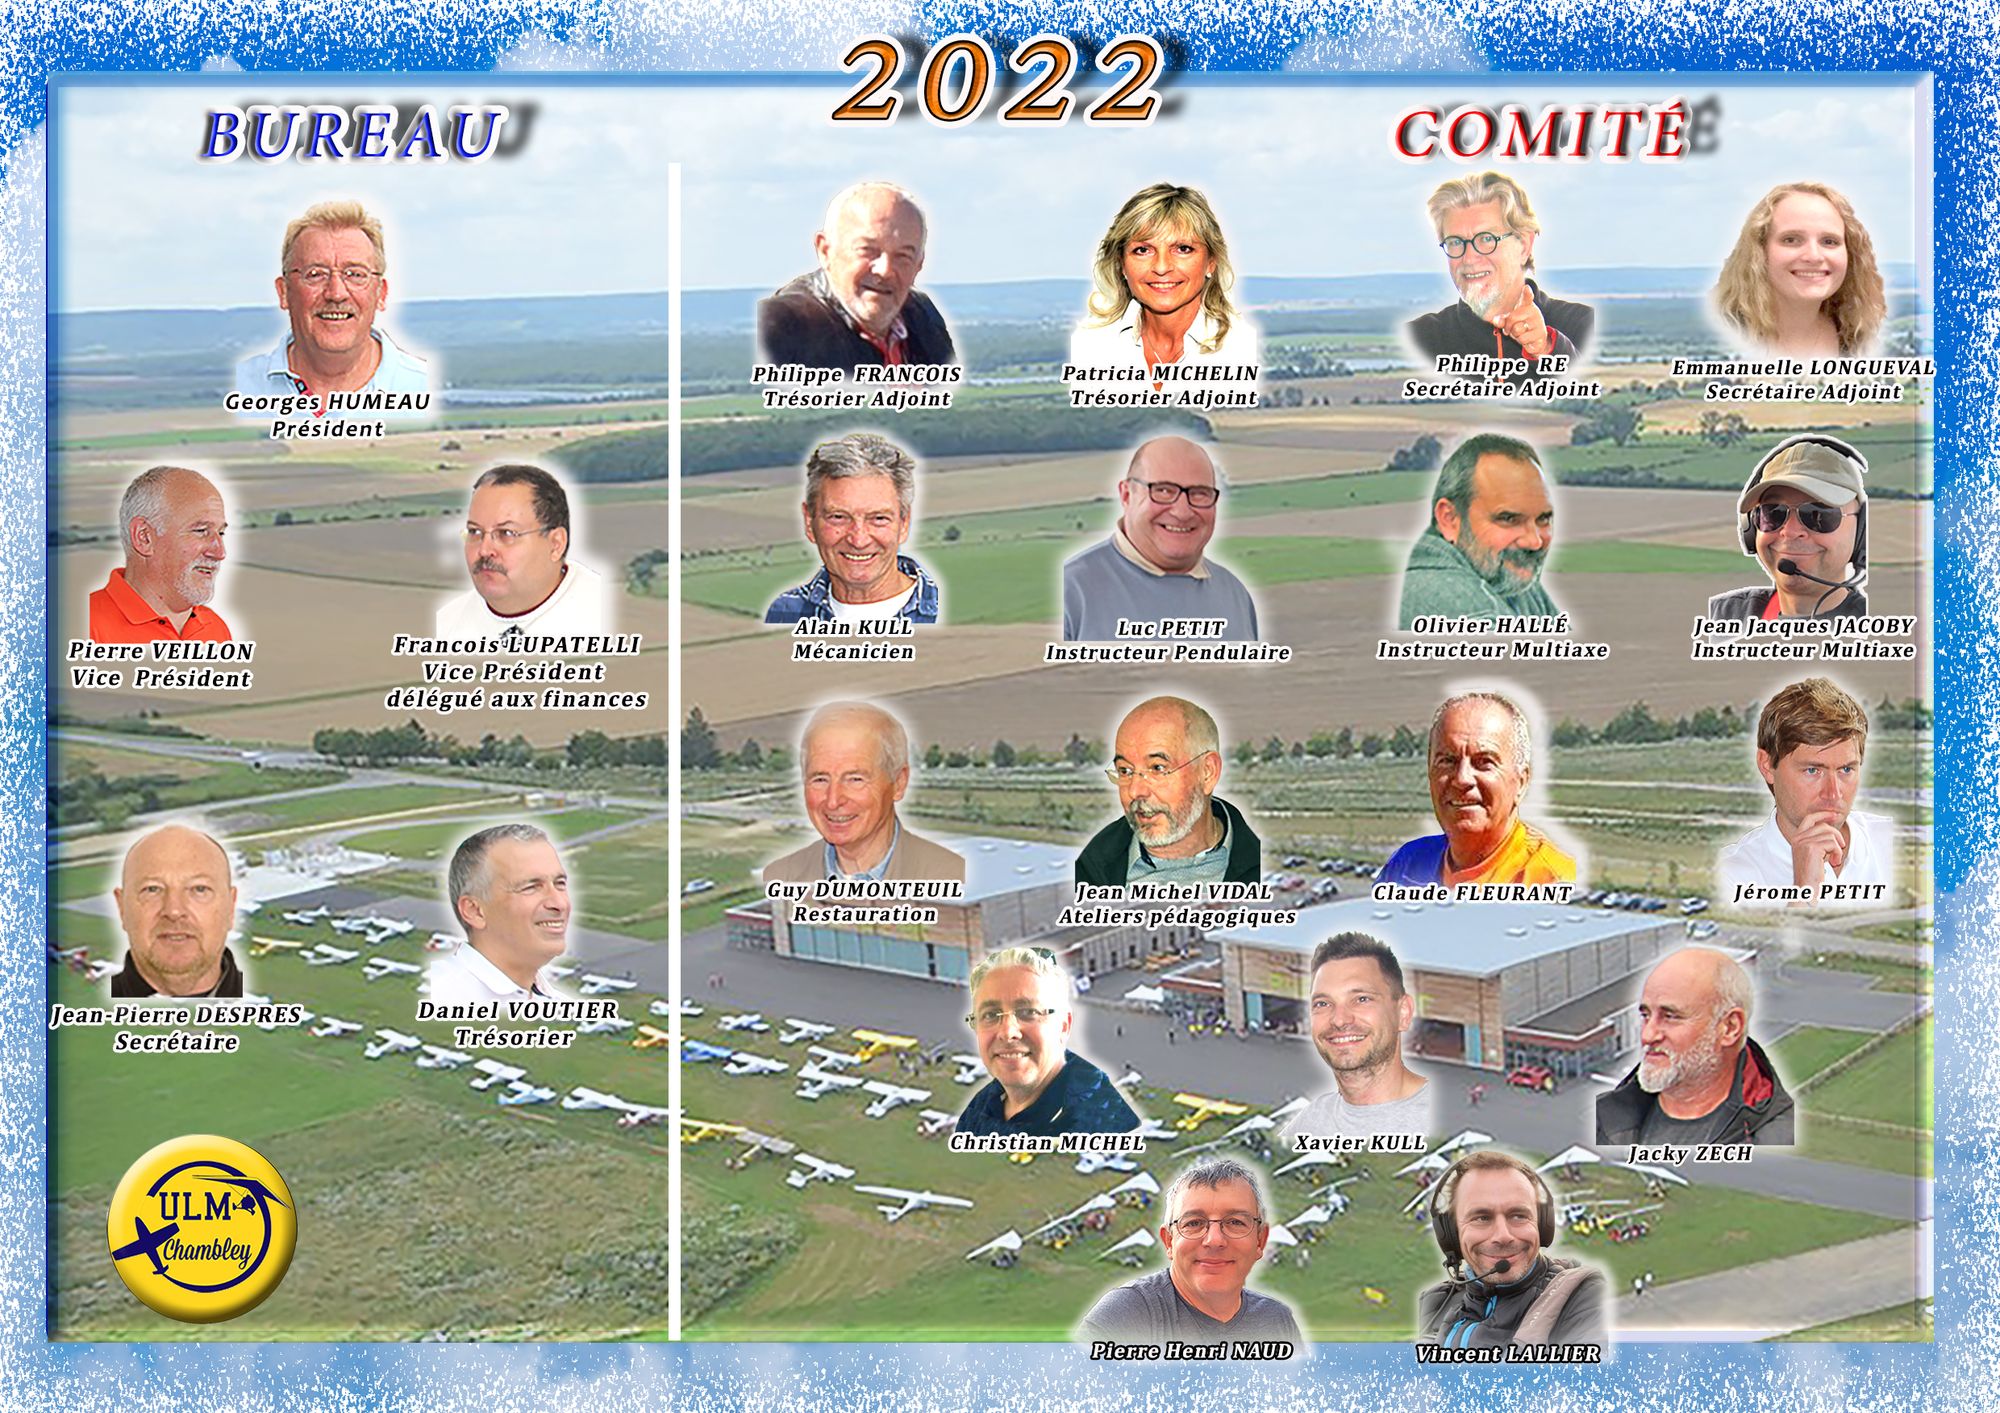 2022 Bureau Comite orga